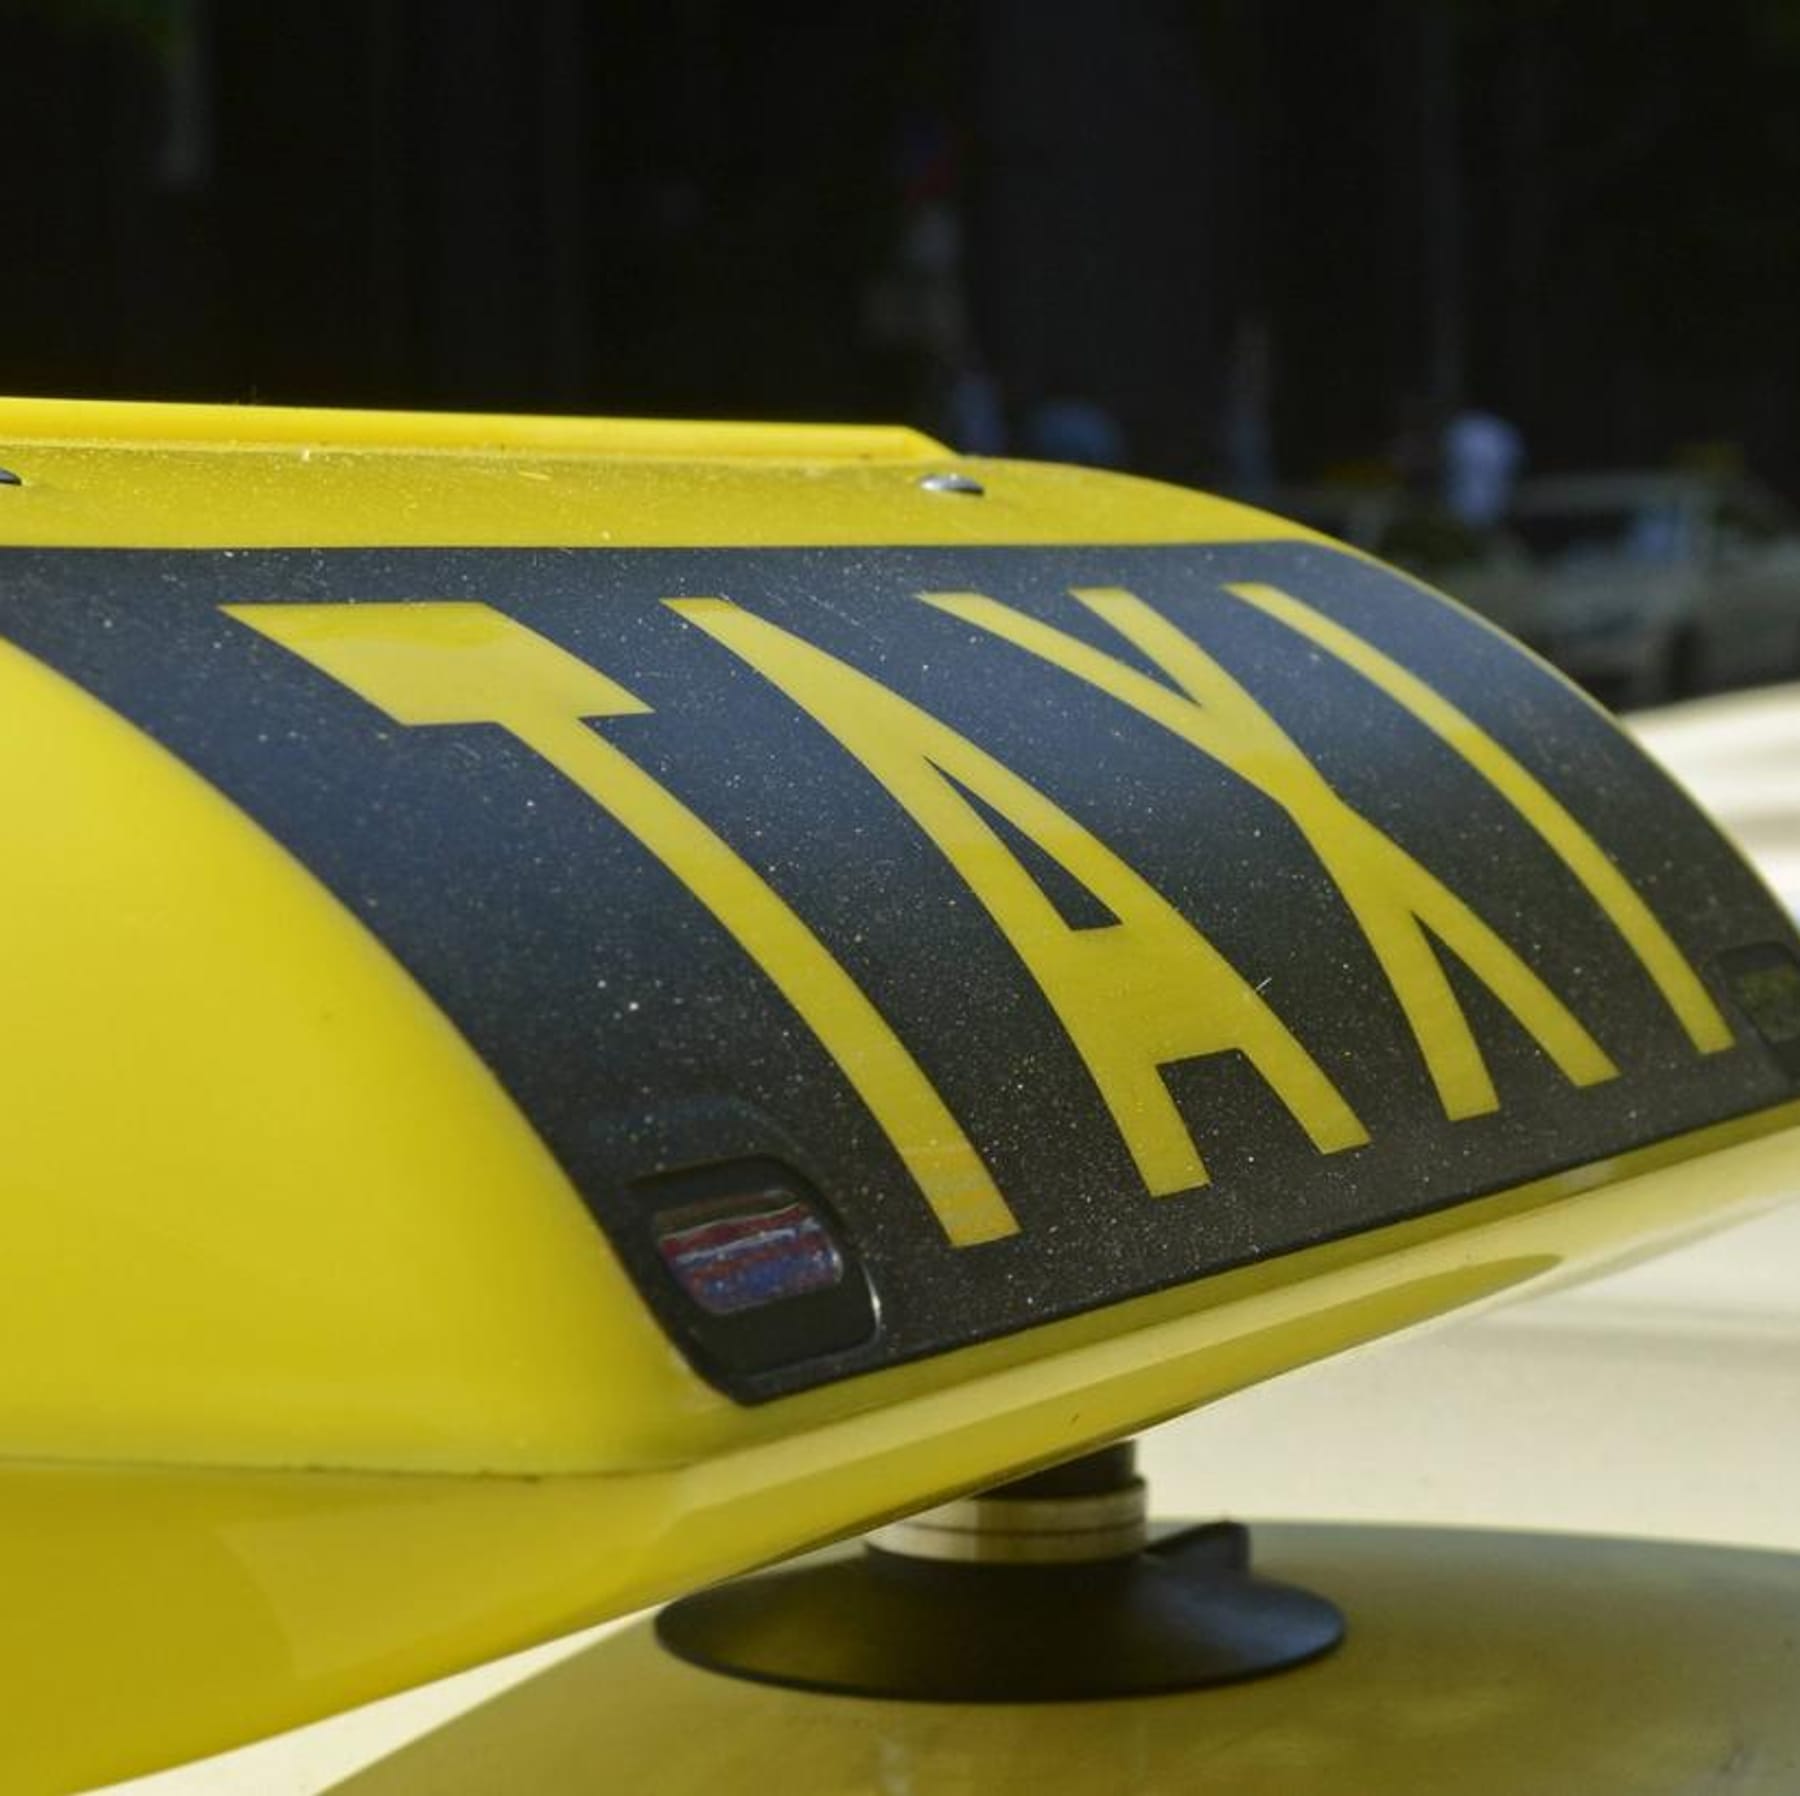 Taxi: Rote Lämpchen im Schild sind ein Zeichen für Gefahr